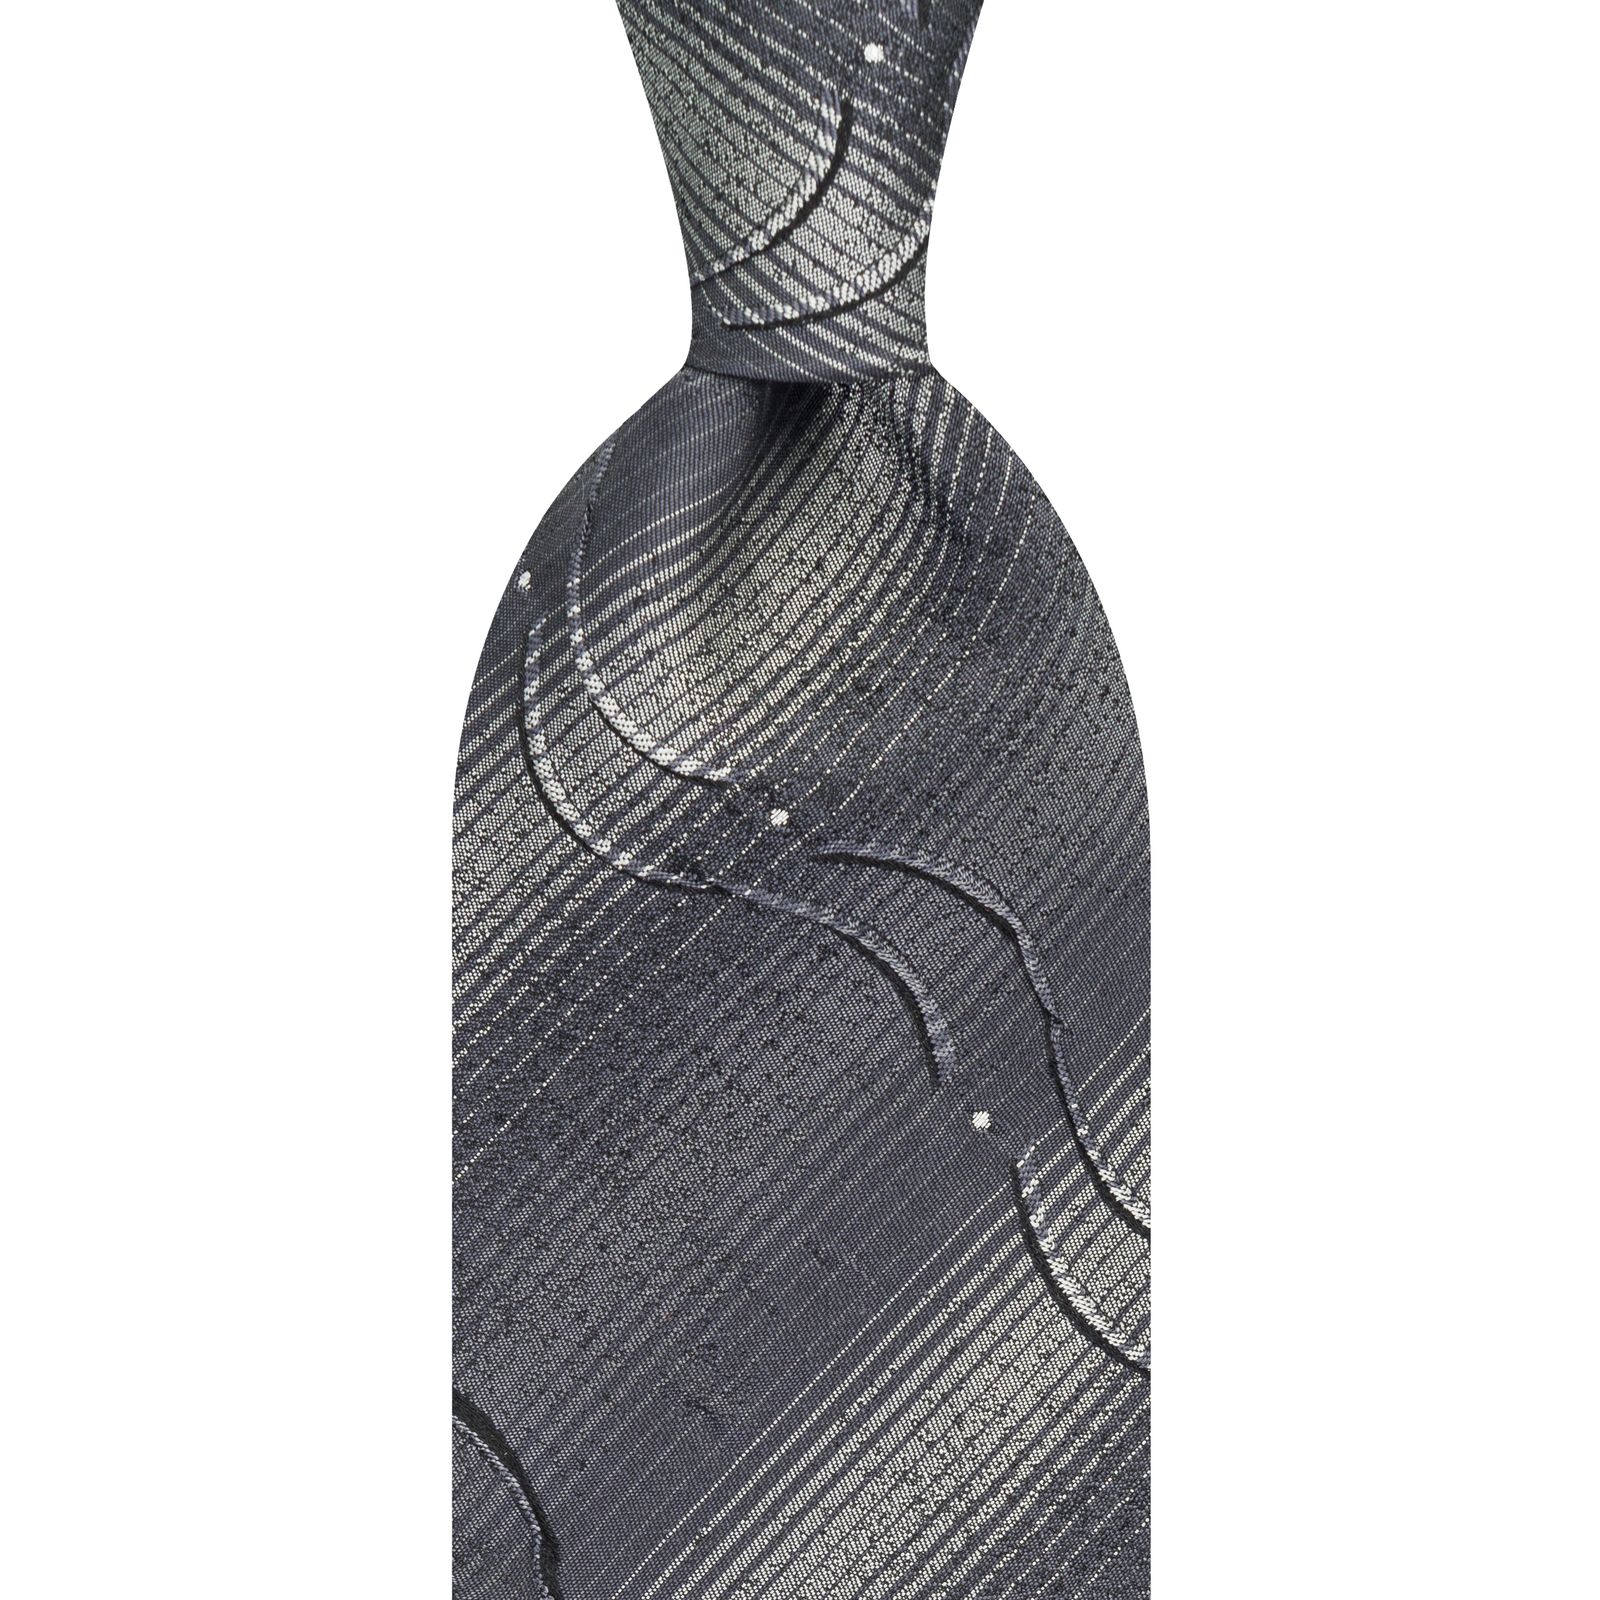  کراوات مردانه جیان فرانکو روسی مدل GF-CA517-GR -  - 2